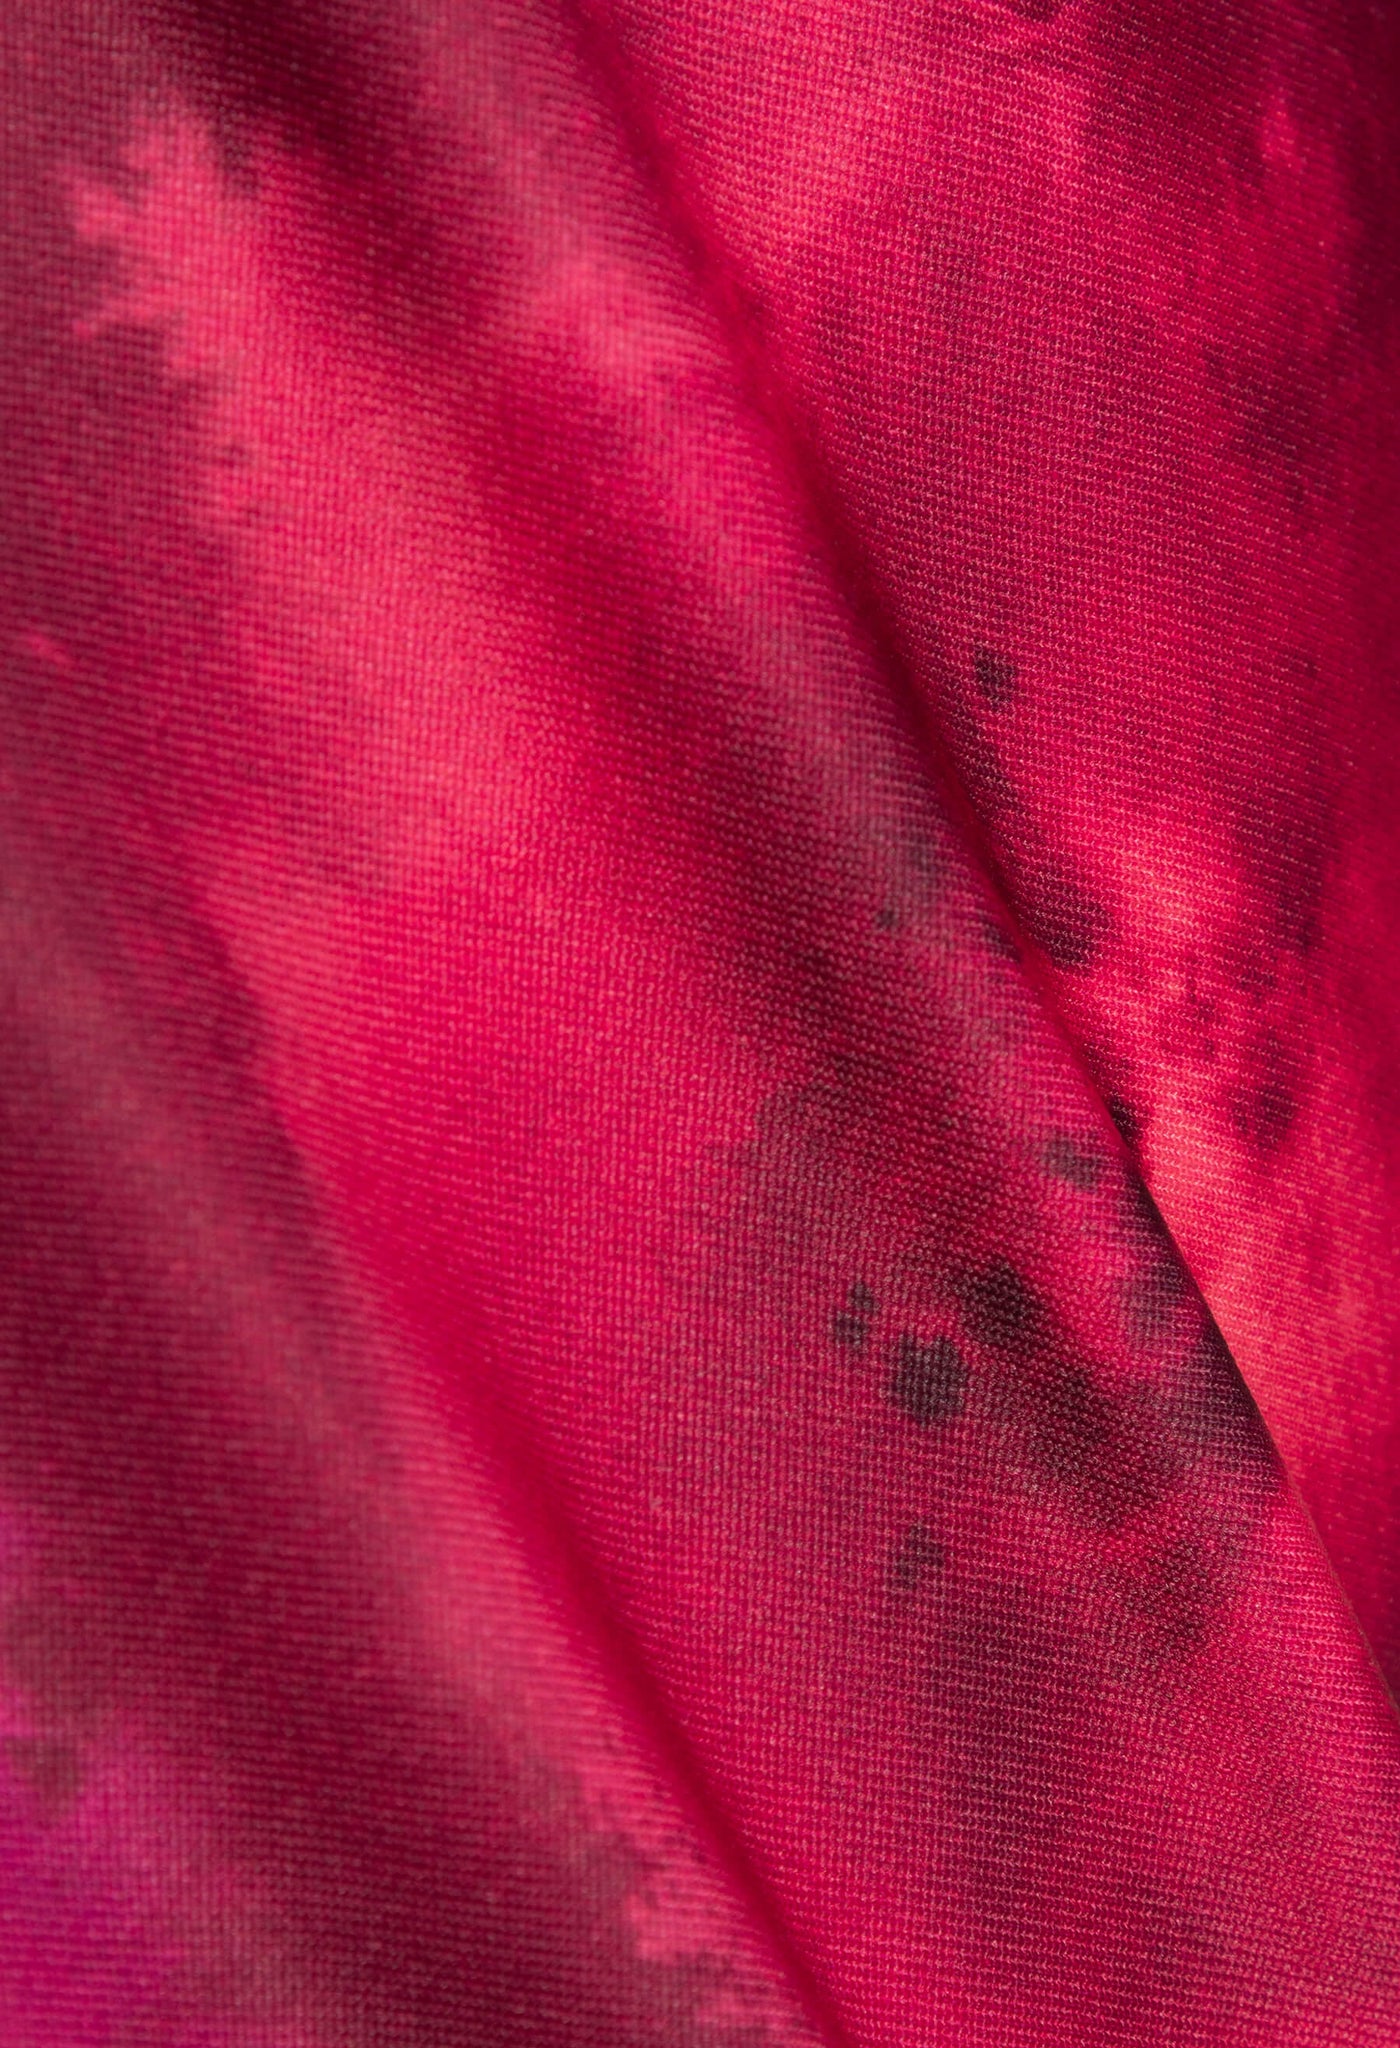 Découvrez l’imprimé Aquaflo framboise, une création unique qui marie l'élégance des motifs floraux abstraits aux nuances chaudes de rouge, le tout relevé de subtils accents noirs.